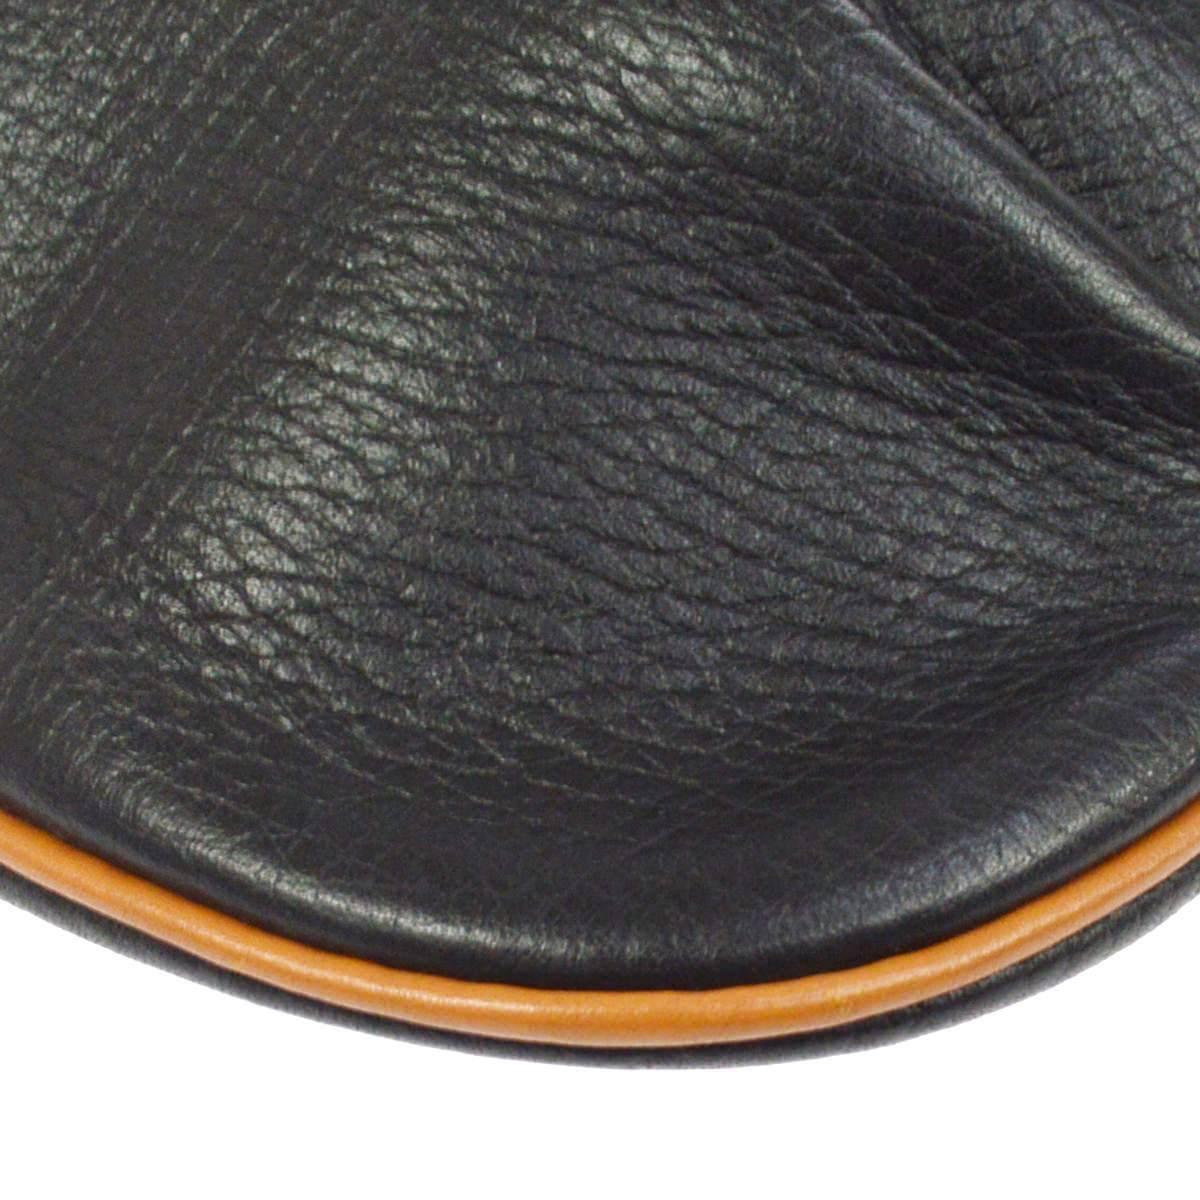 Hermes Black Cognac Leather Hobo Style Shoulder Crossbody Saddle Bag 1